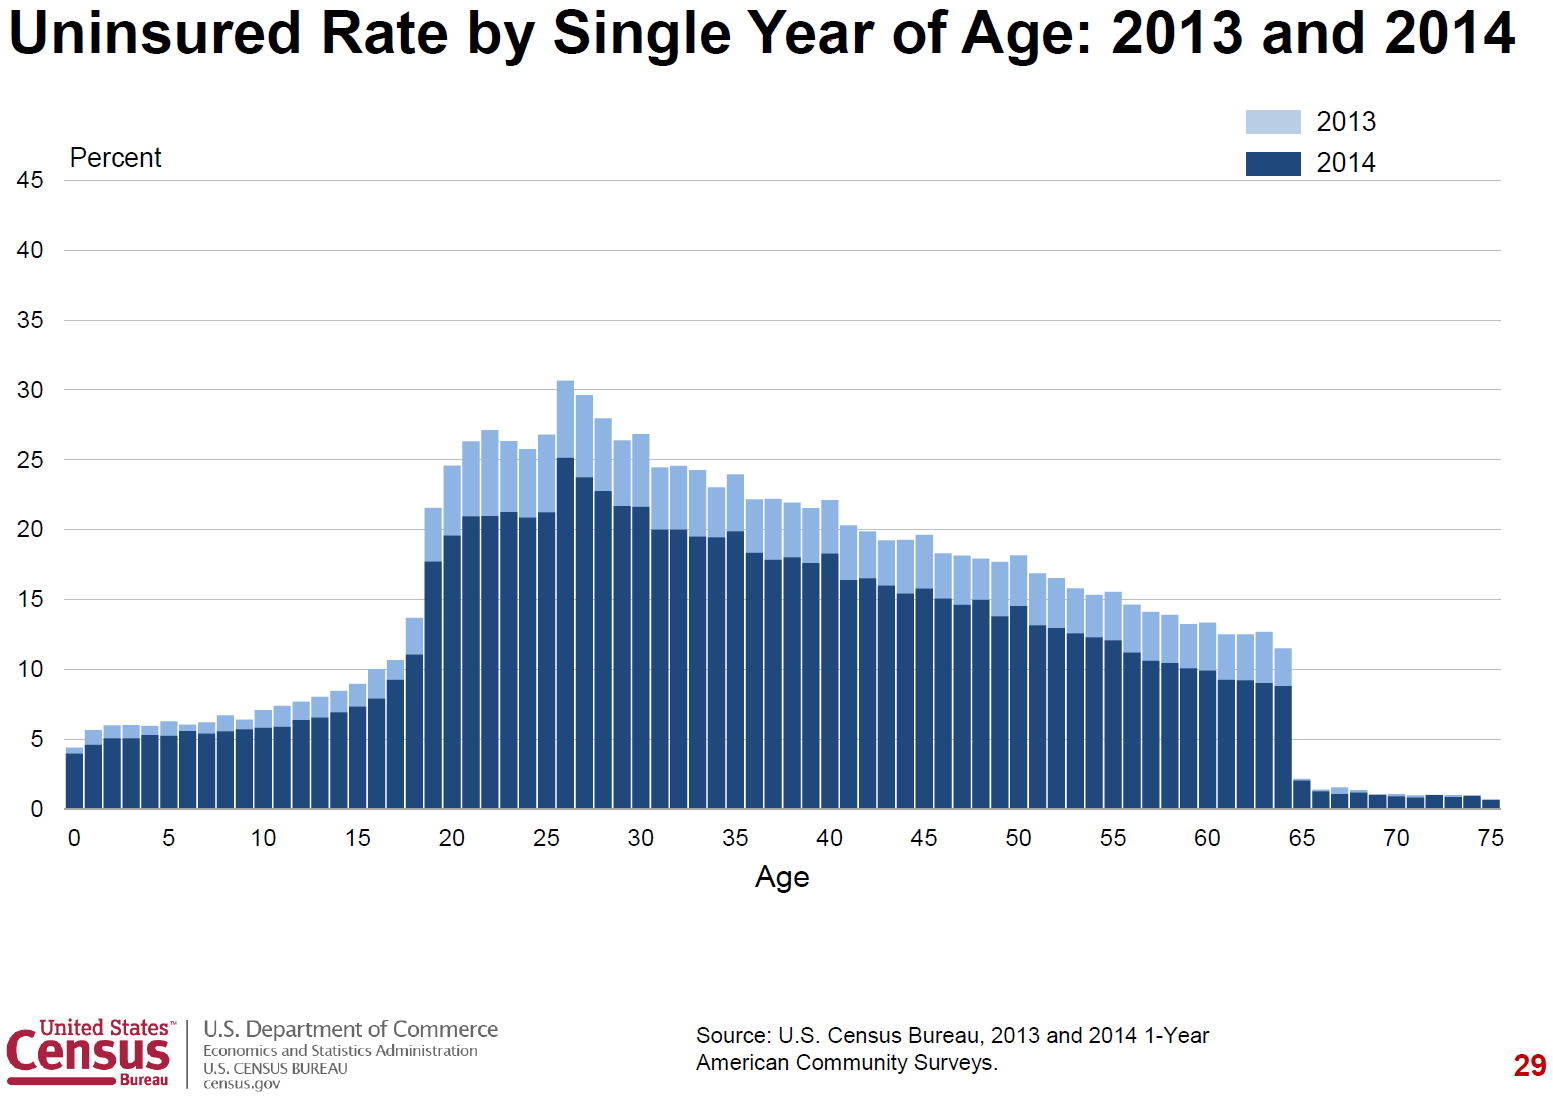 Uninsured rates in 2014